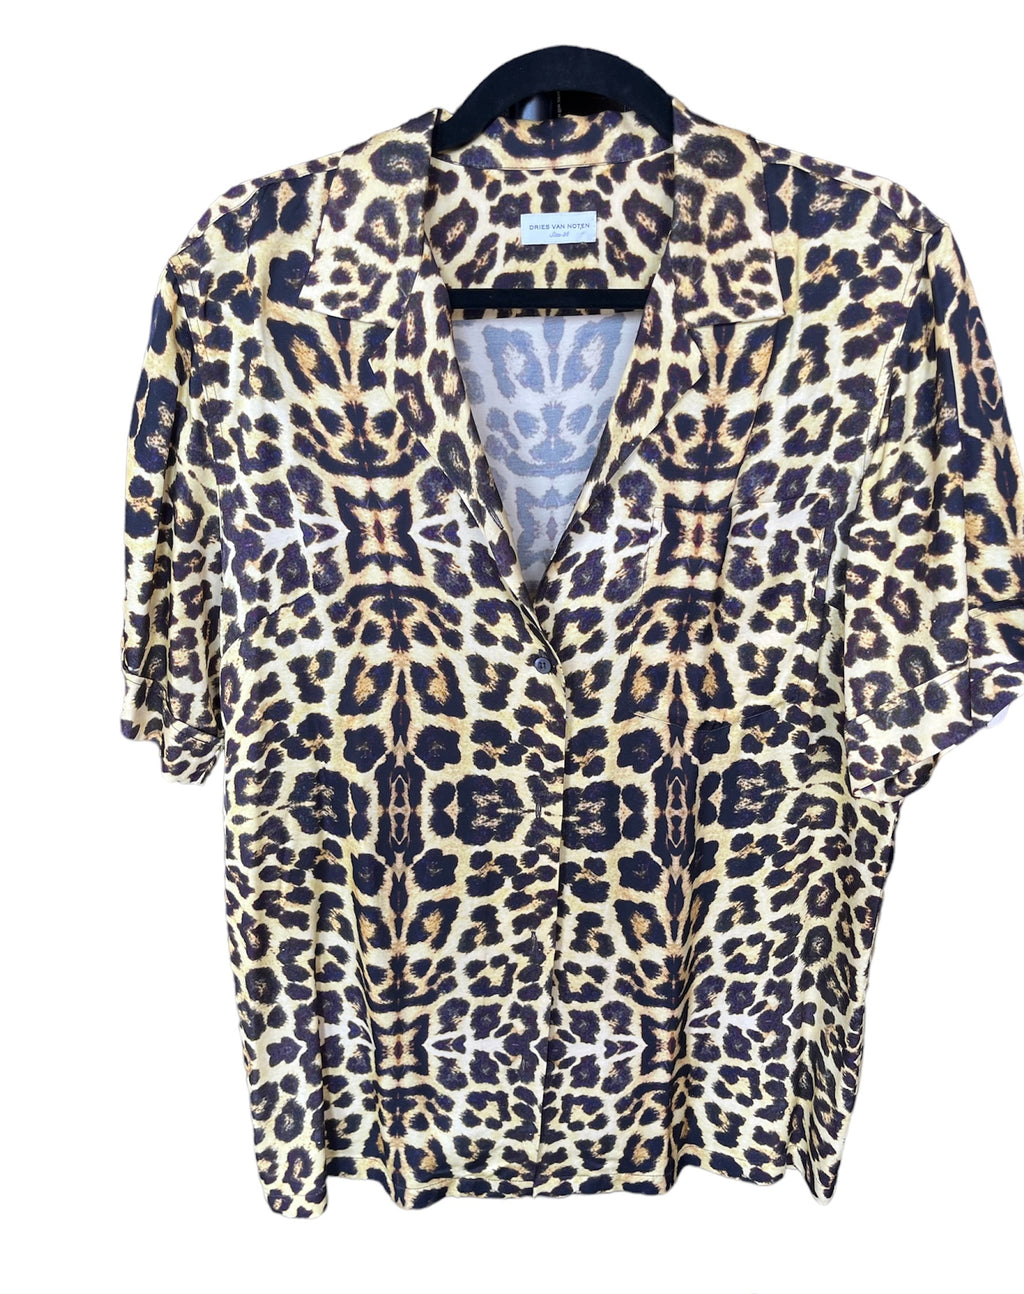 Dries van Noten Leopard Print T-shirt Top